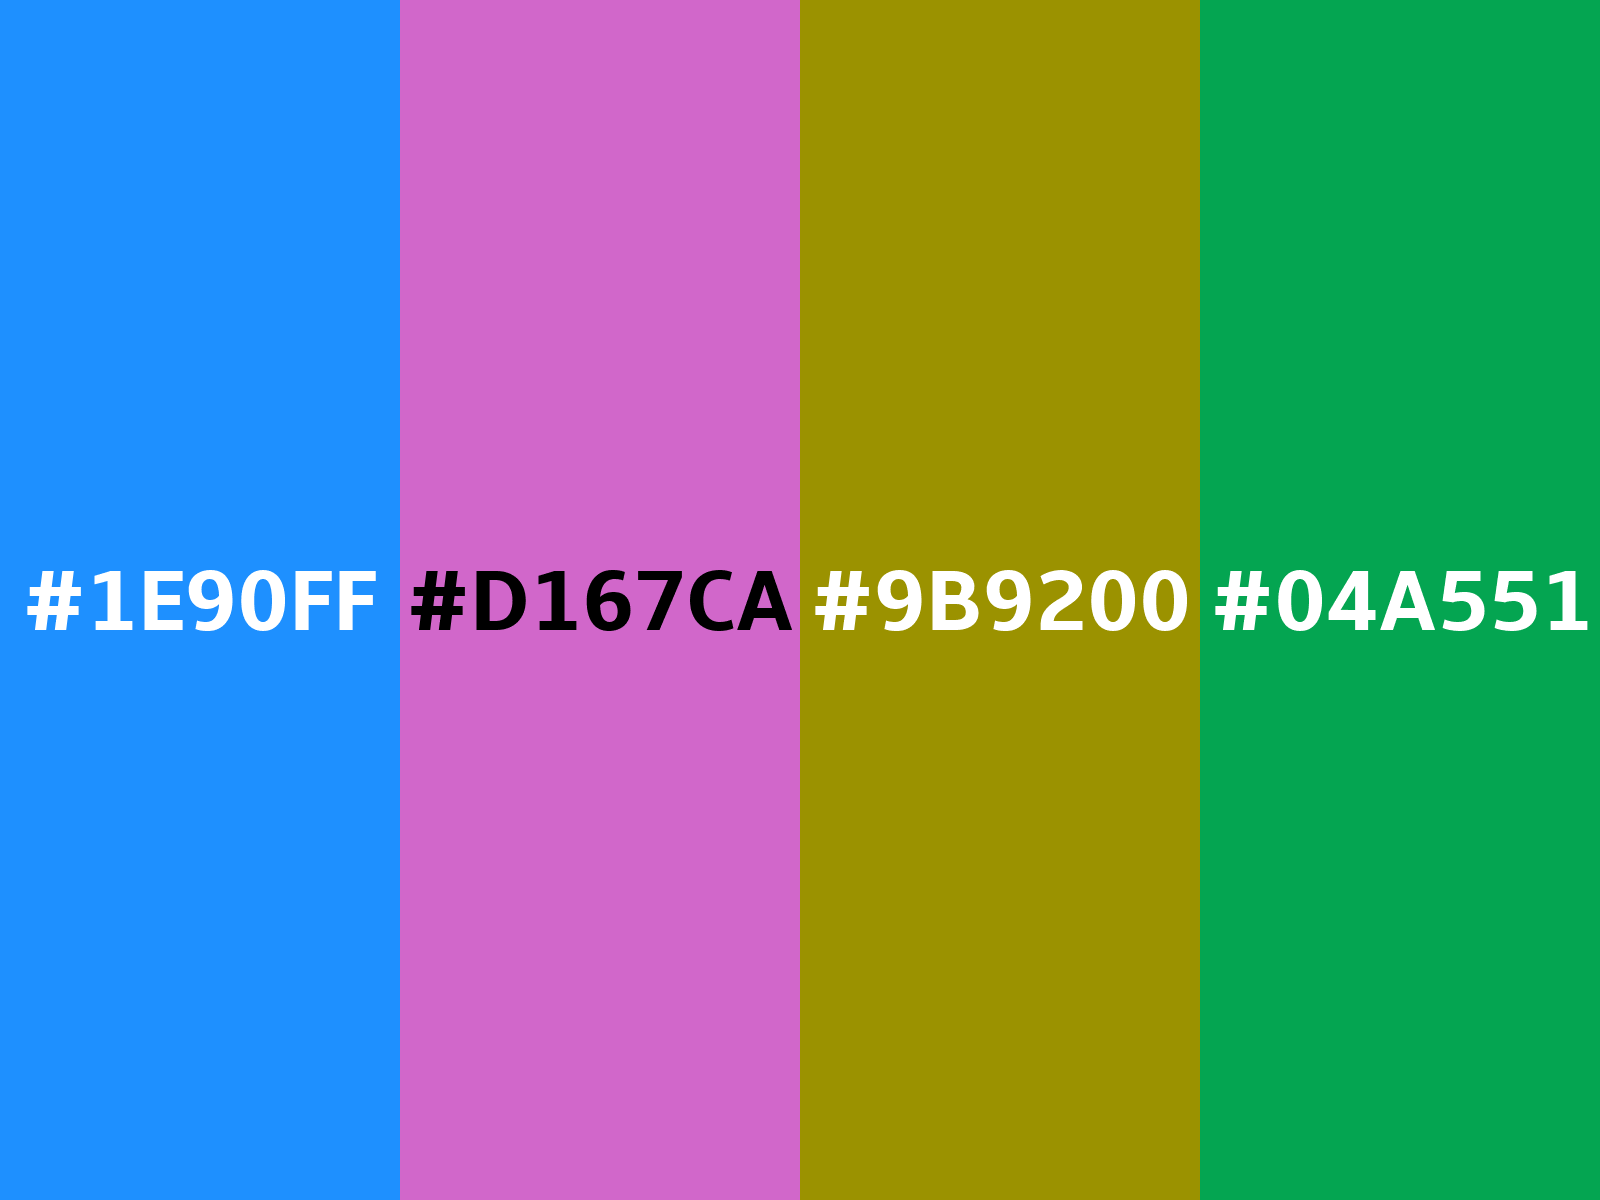 17bdff - Dodger Blue - RGB 23, 189, 255 Color Informations